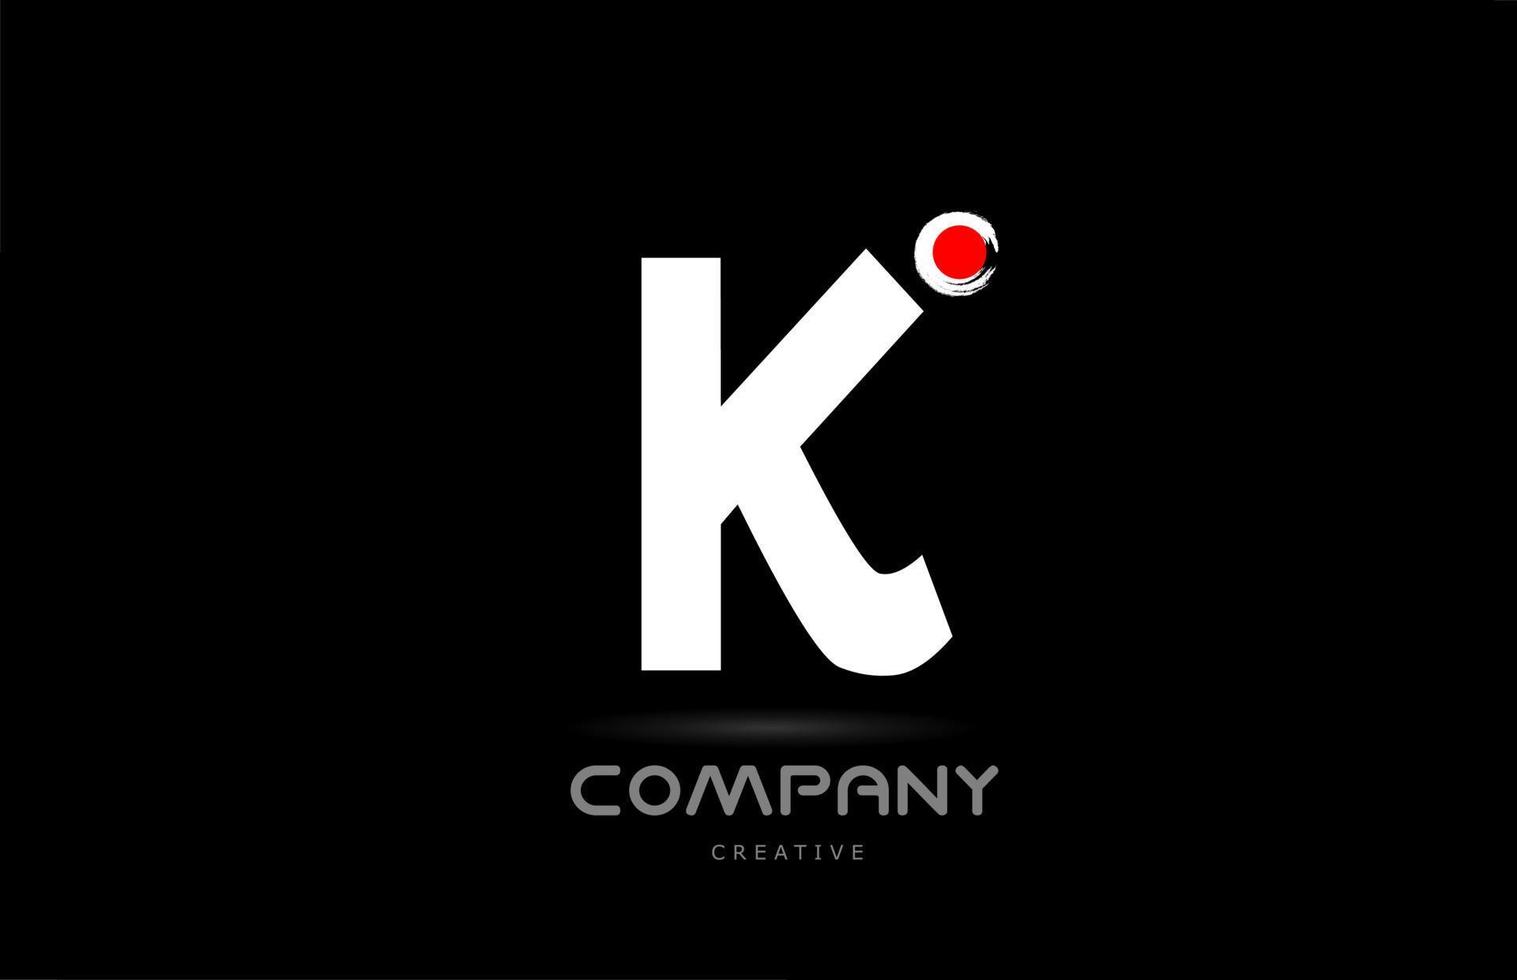 k design de ícone do logotipo da letra do alfabeto preto e branco com letras de estilo japonês. modelo criativo para negócios e empresa vetor